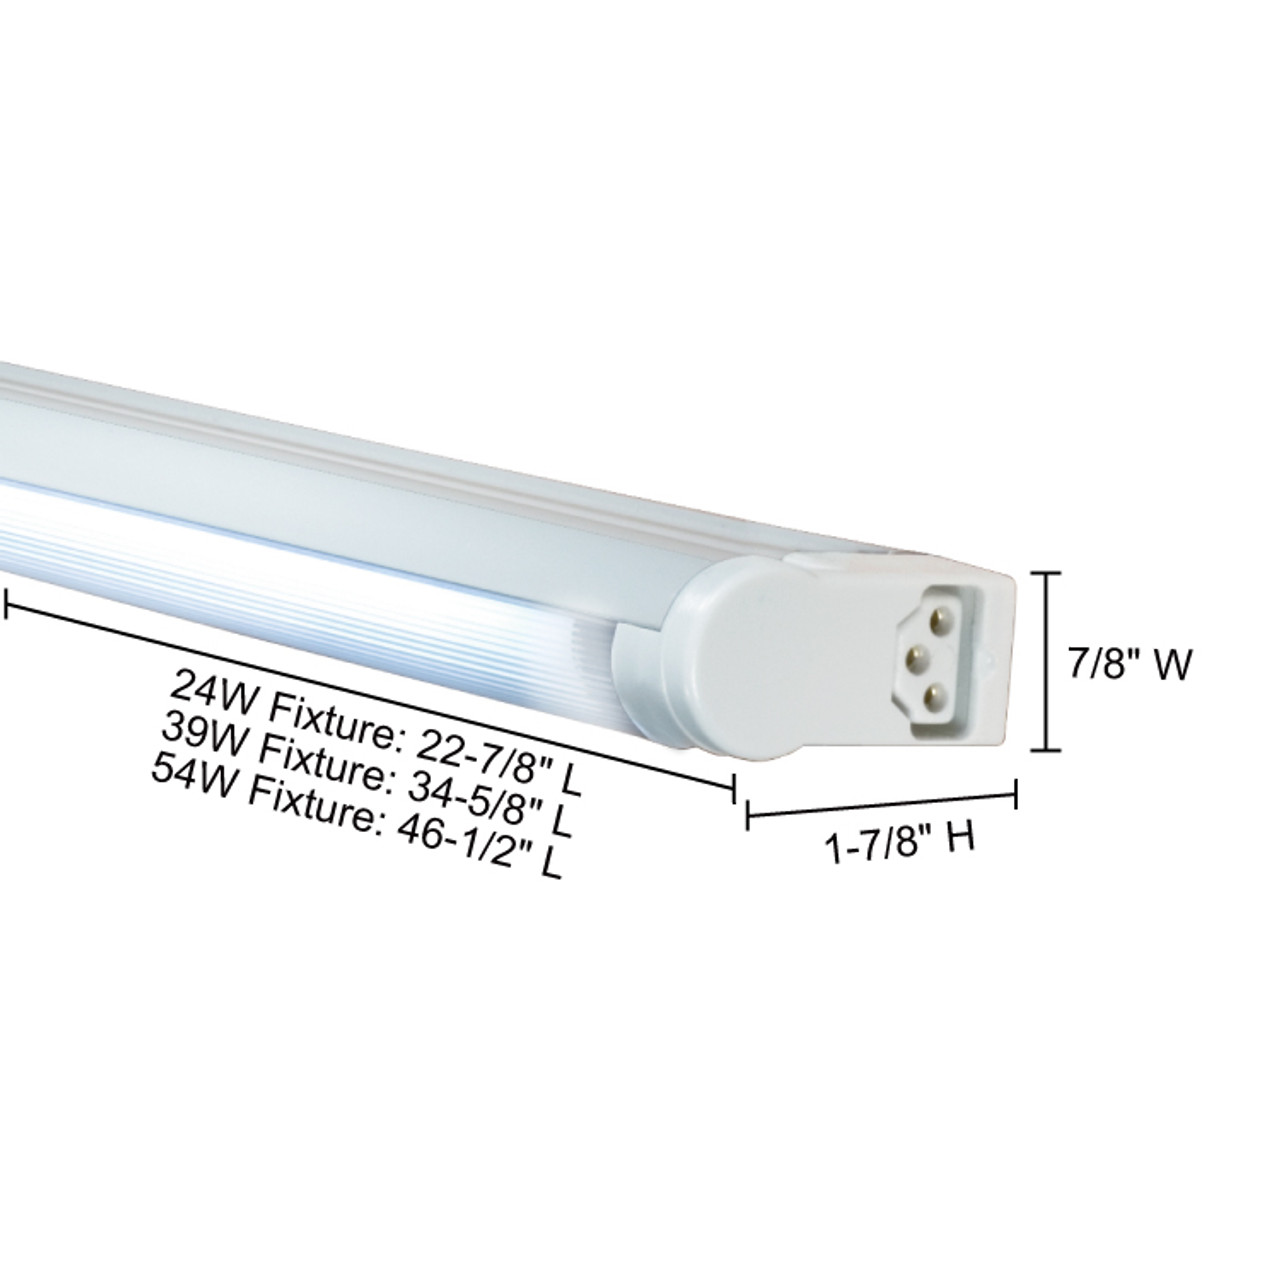 JESCO Lighting SG5AHO-24/41-W Sleek Plus Grounded 24W T5 Bi-Pin Linear Fluorescent, 4100K, White